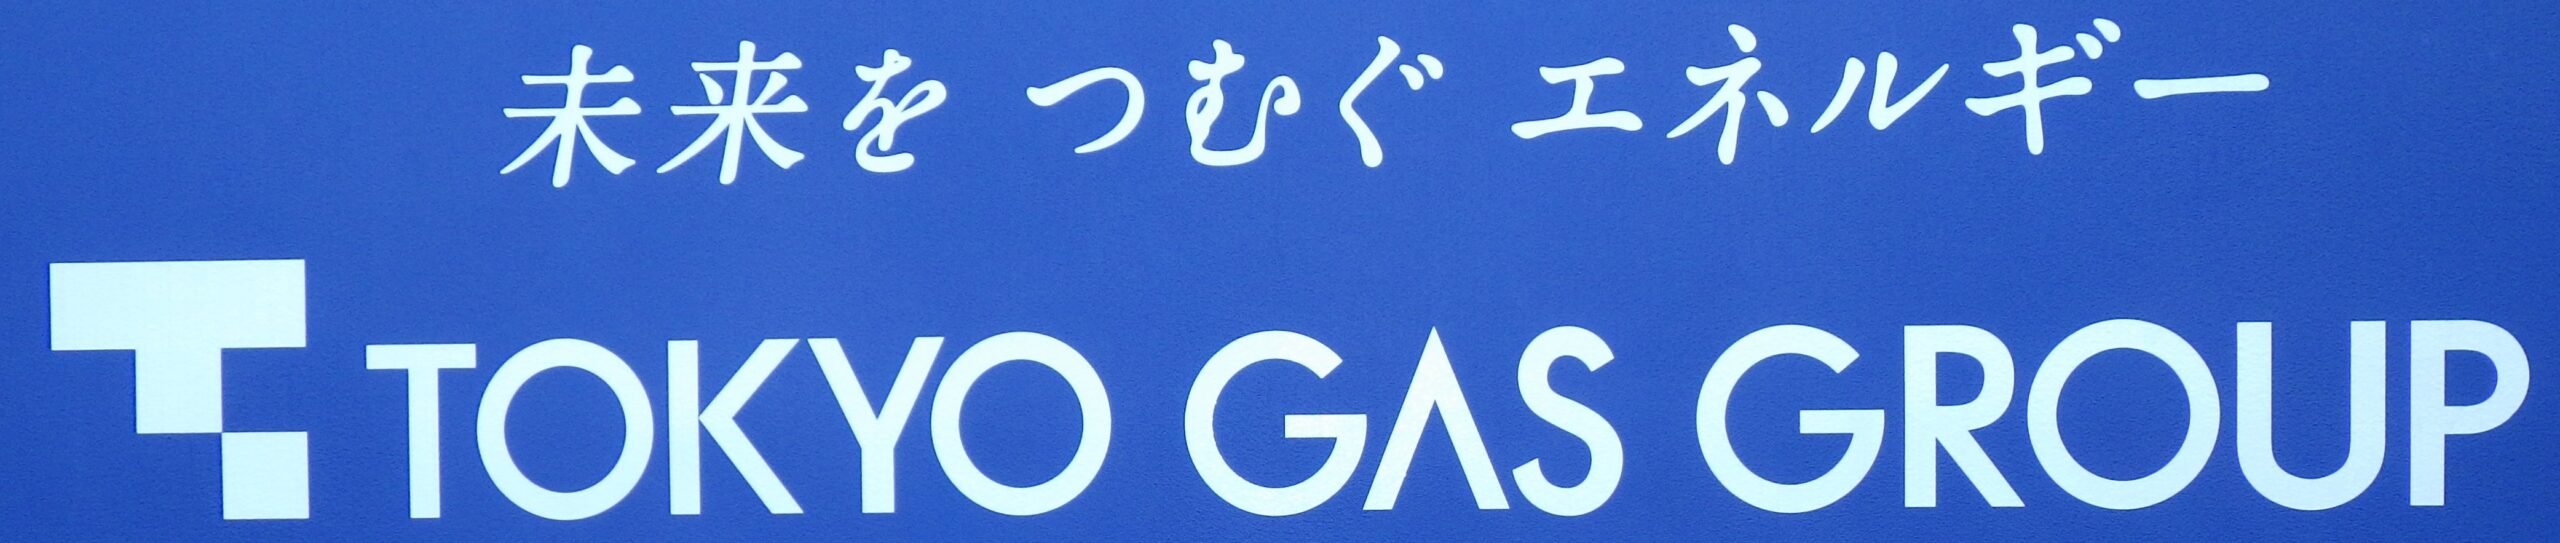 東京ガス様外野ラバーフェンス広告